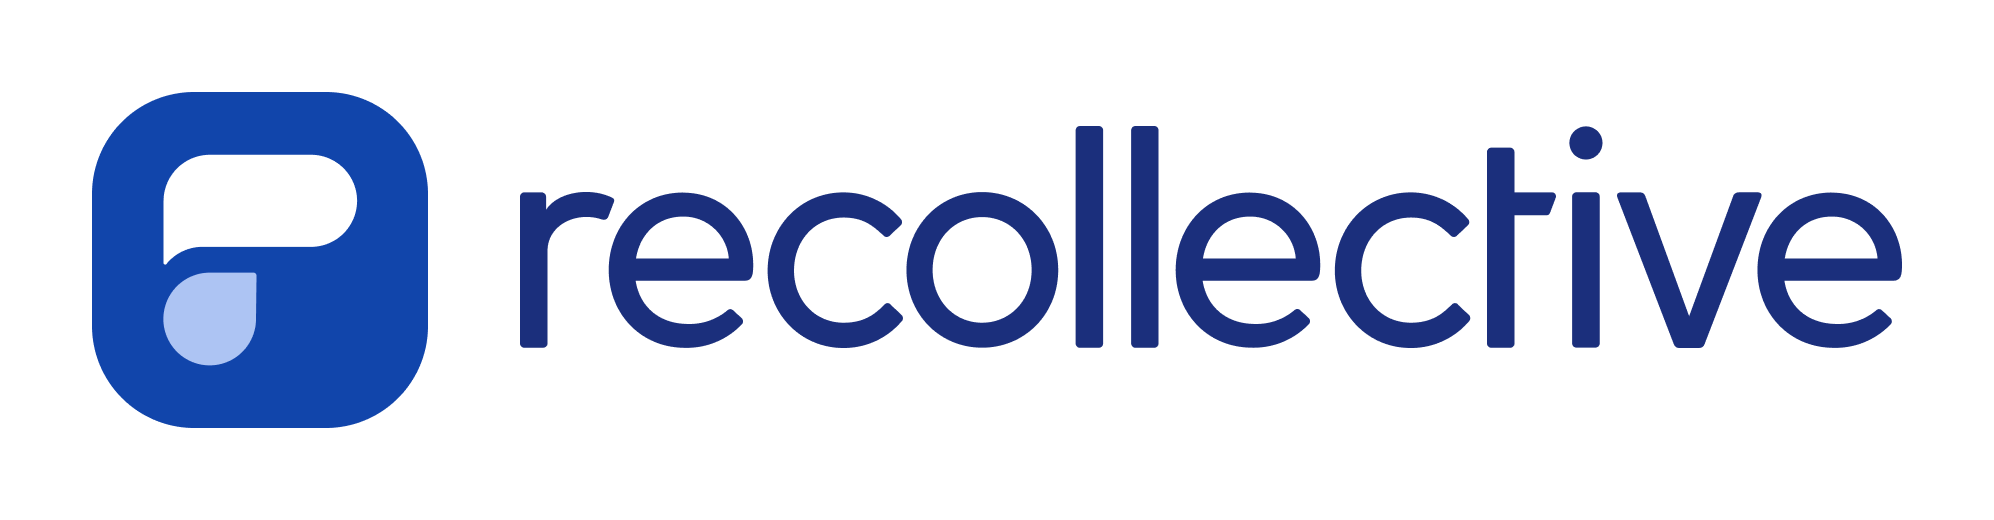 recollective logo